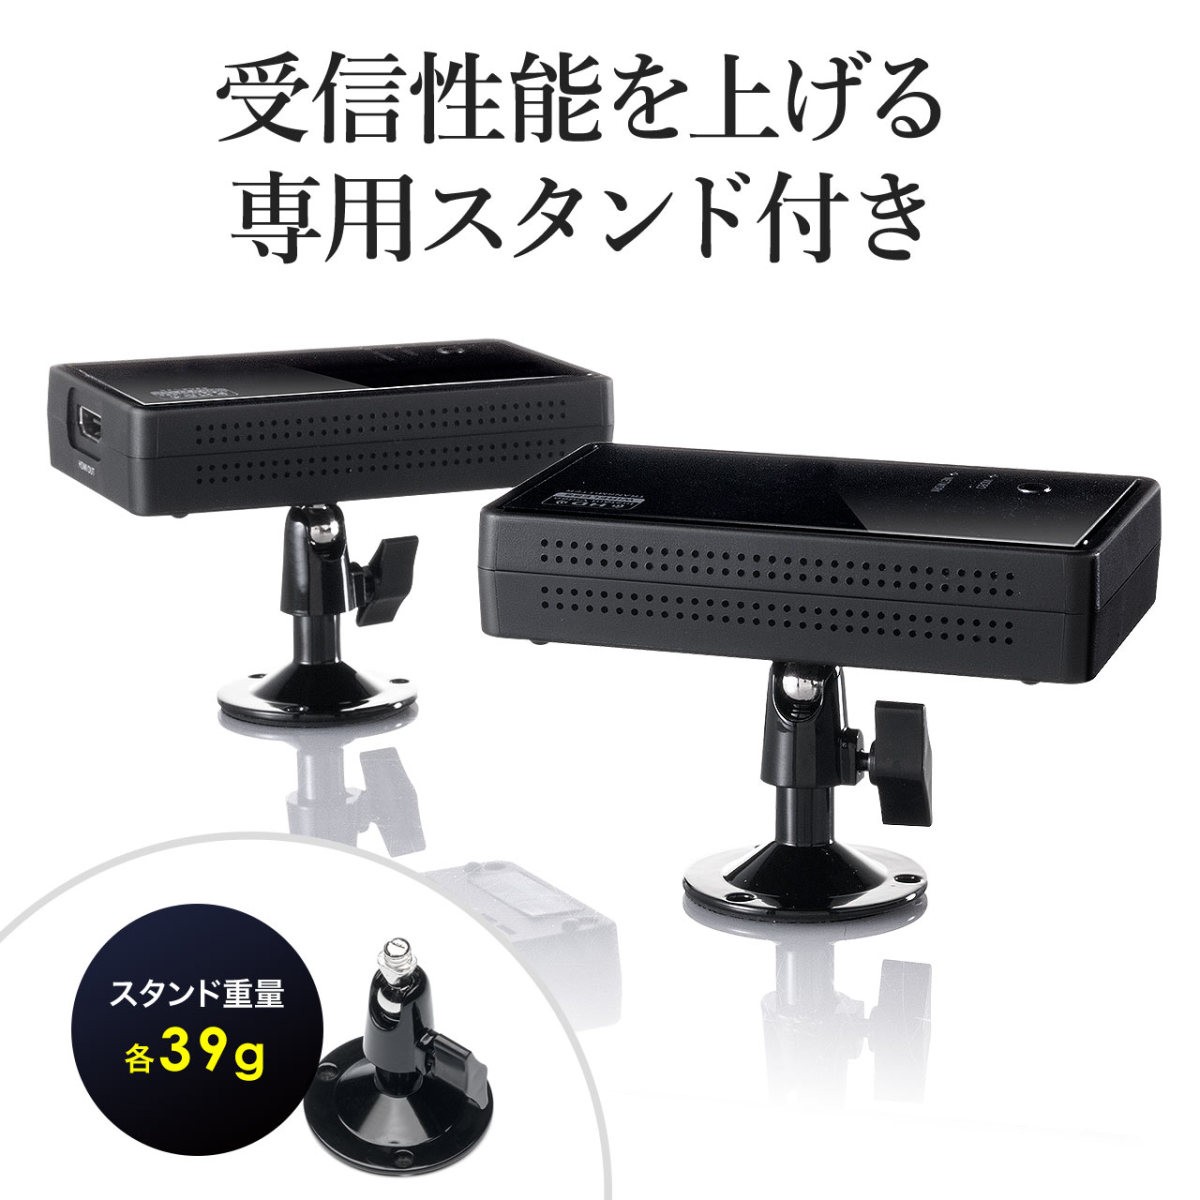 ワイヤレス HDMI 無線 送受信 エクステンダー テレビ PS4 HDMI 